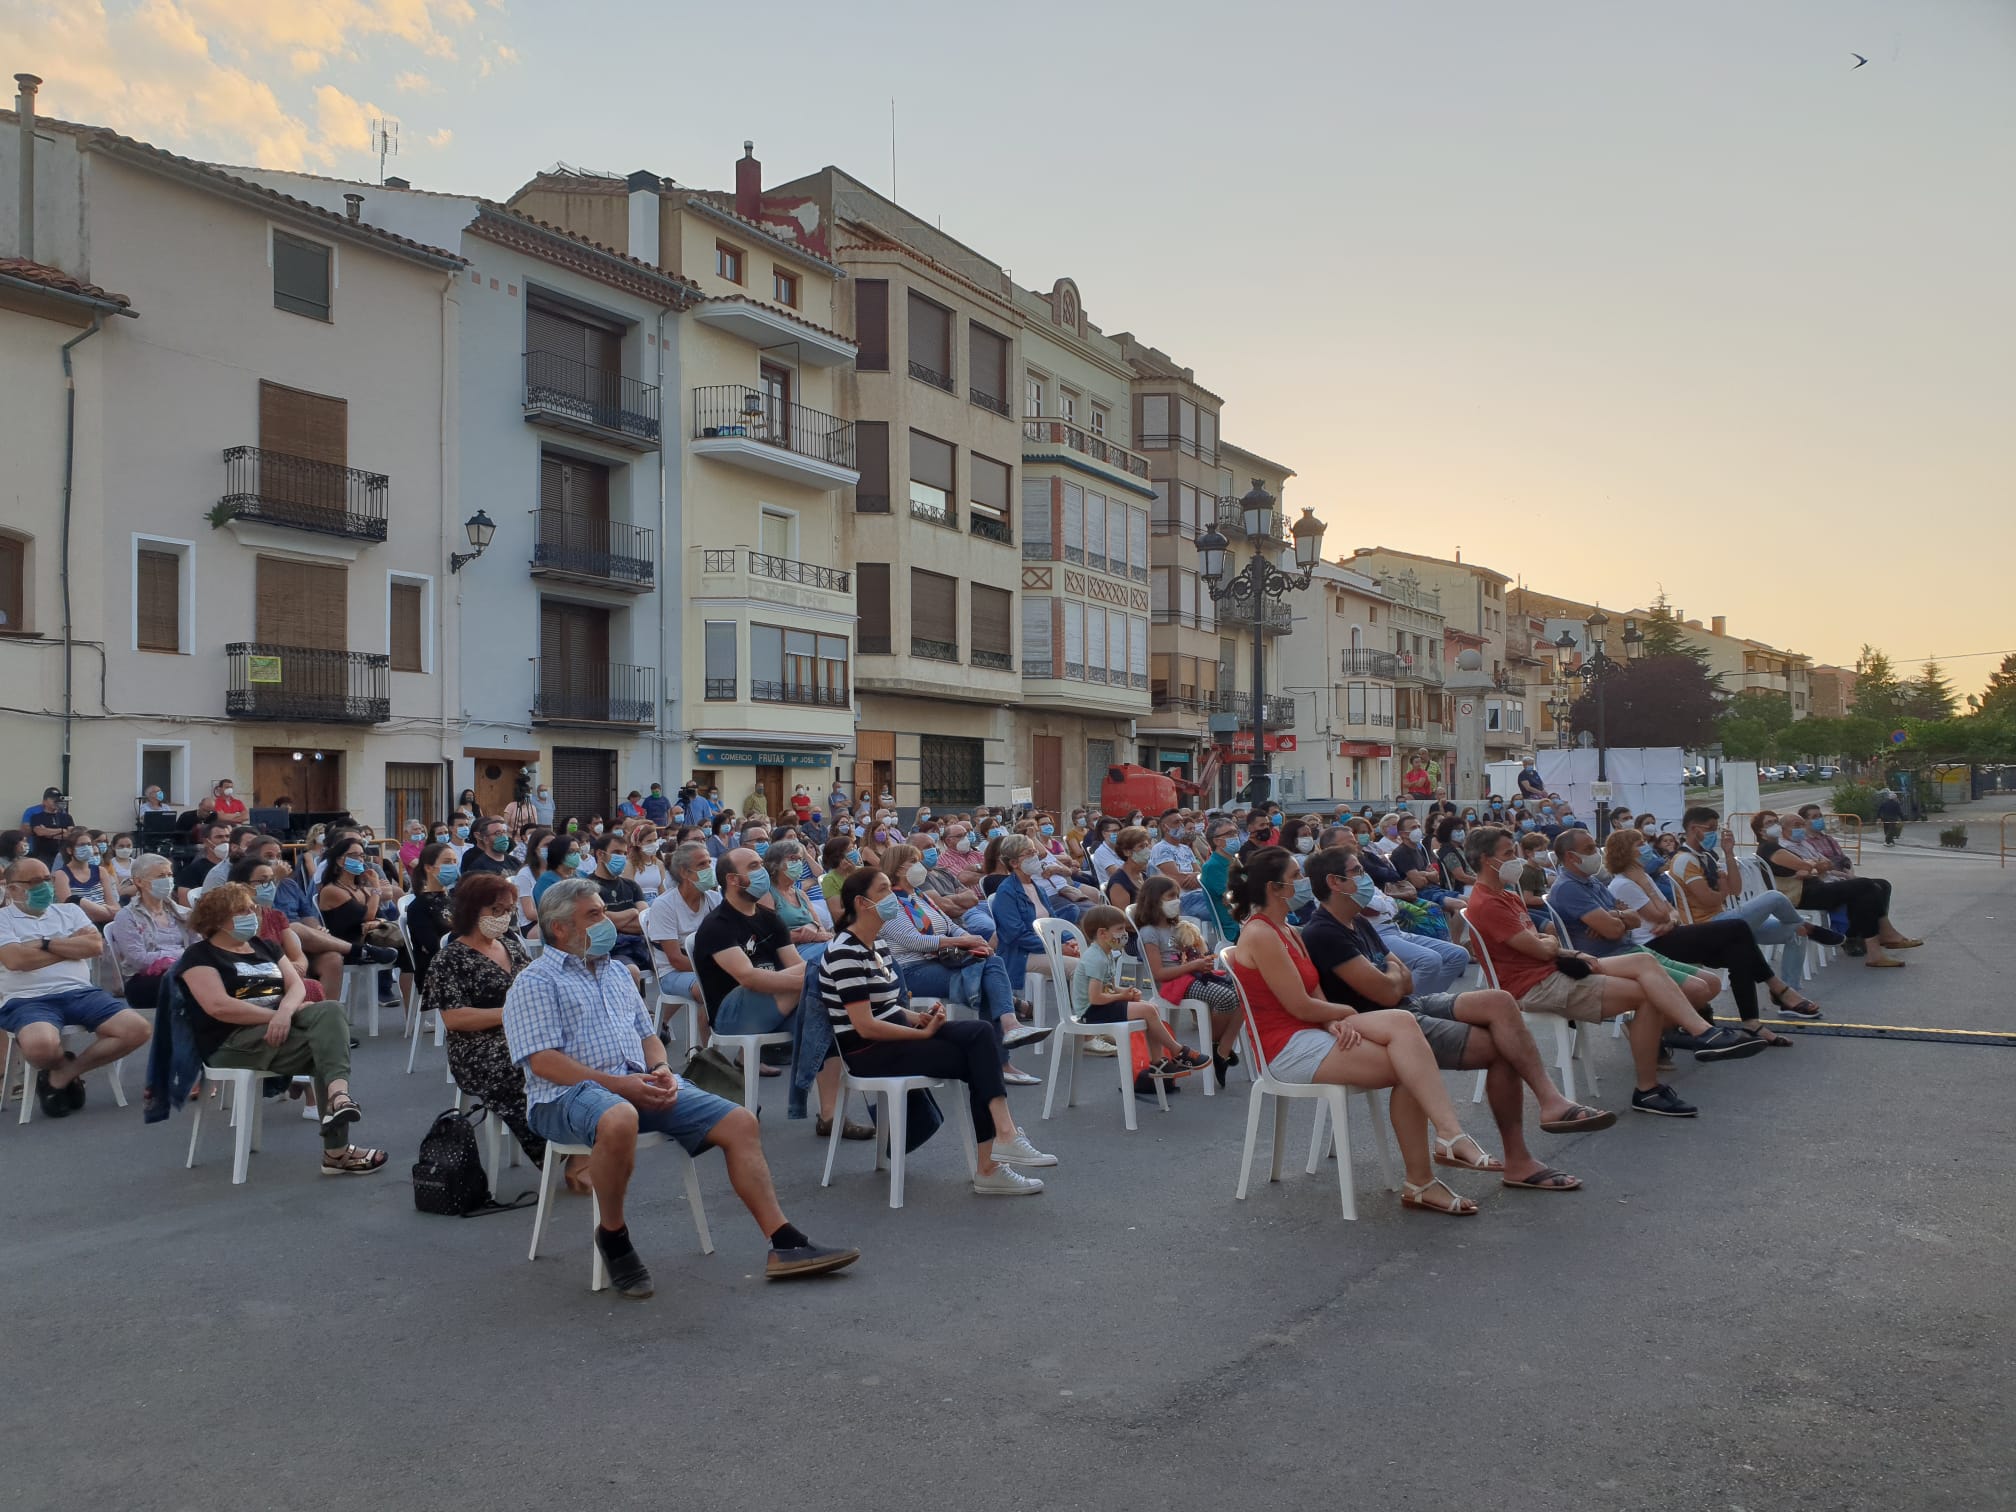 Molts riures amb la representació de “El Tutor burlat” a Vilafranca